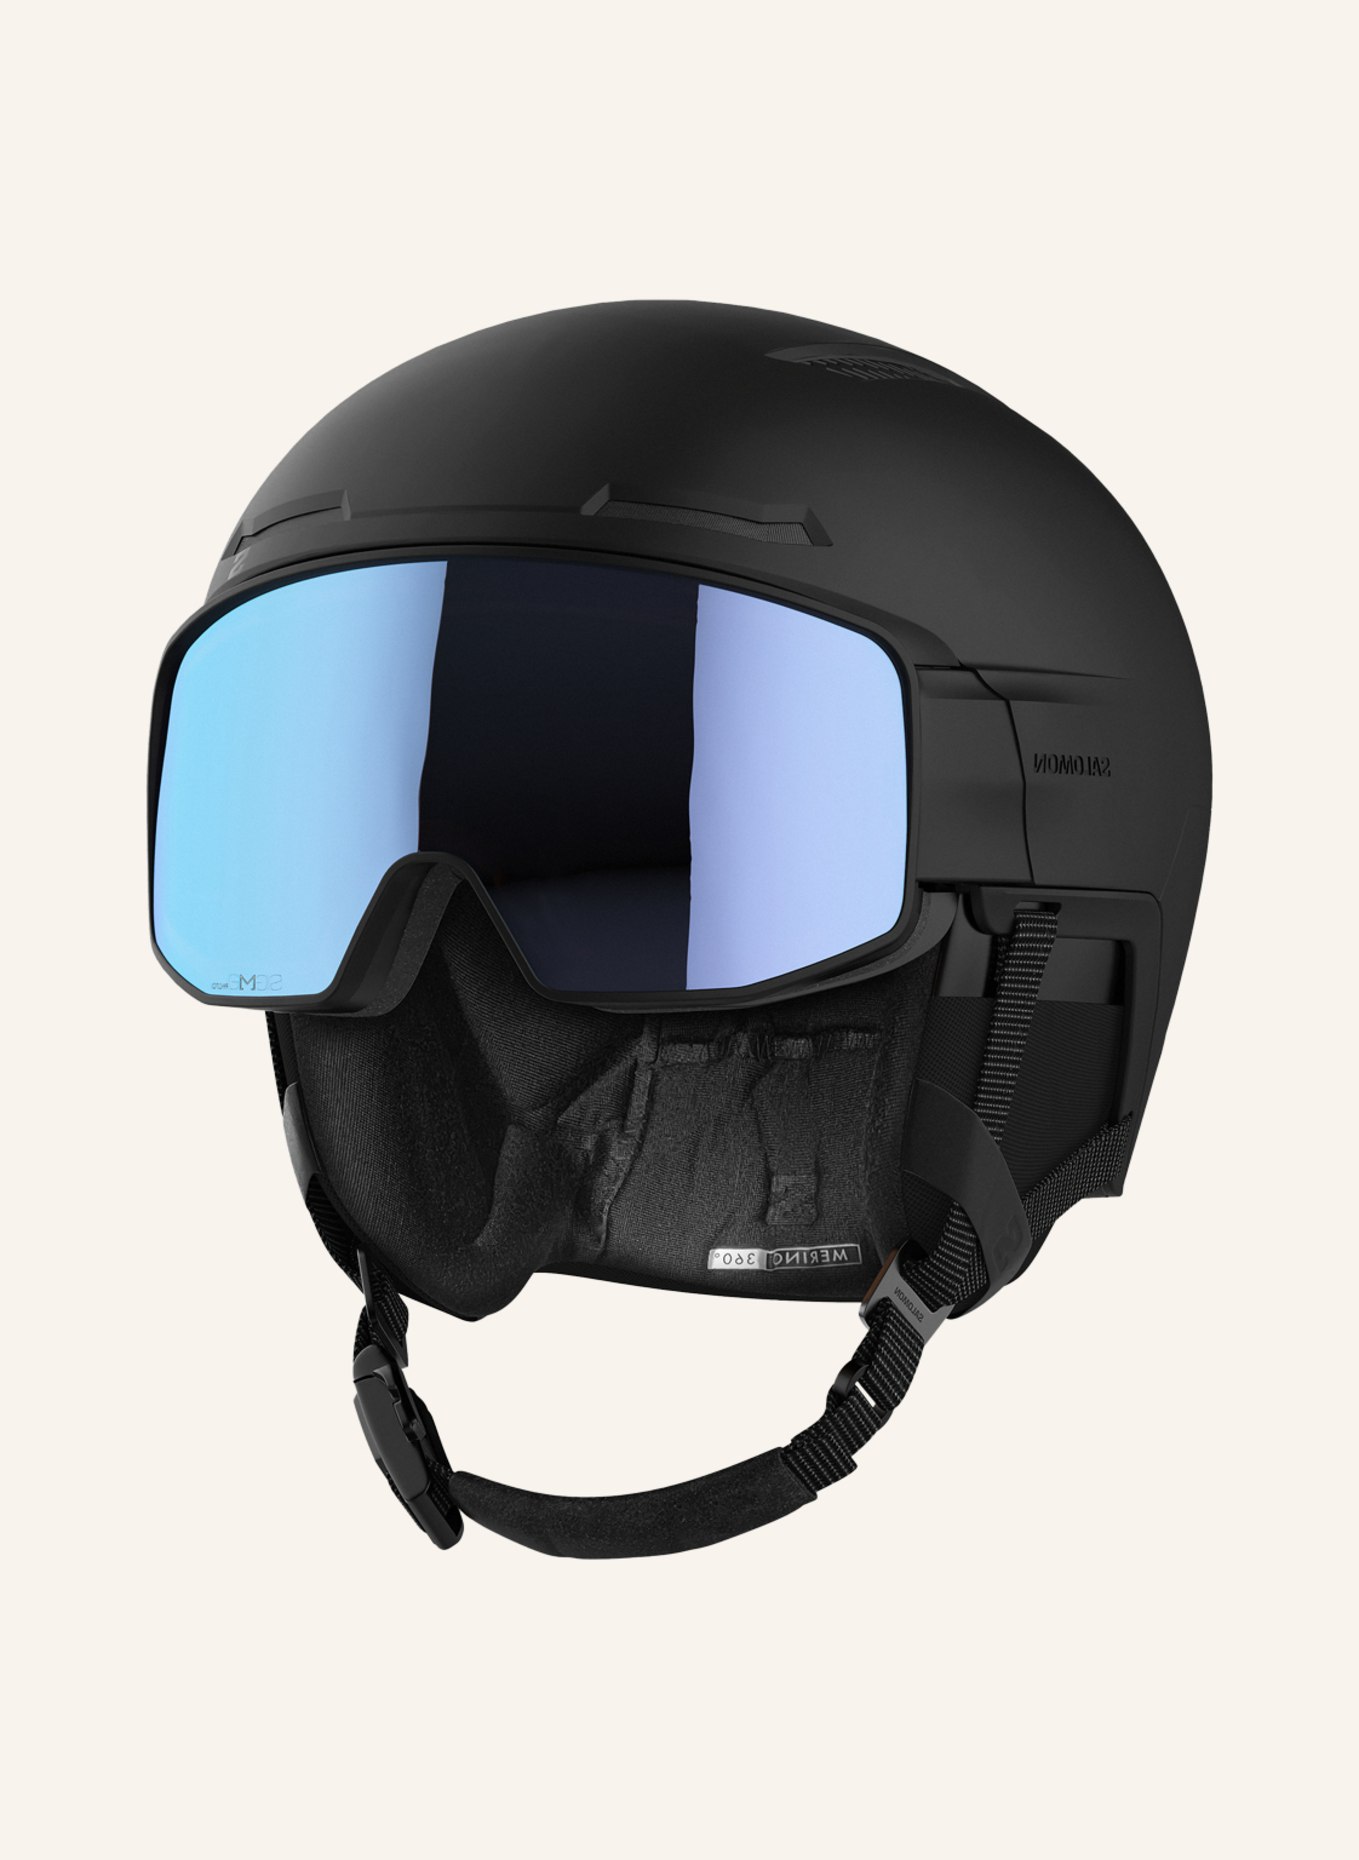 SALOMON Ski helmet DRIVER PRIME SIGMA PHOTO MIPS with visor in black